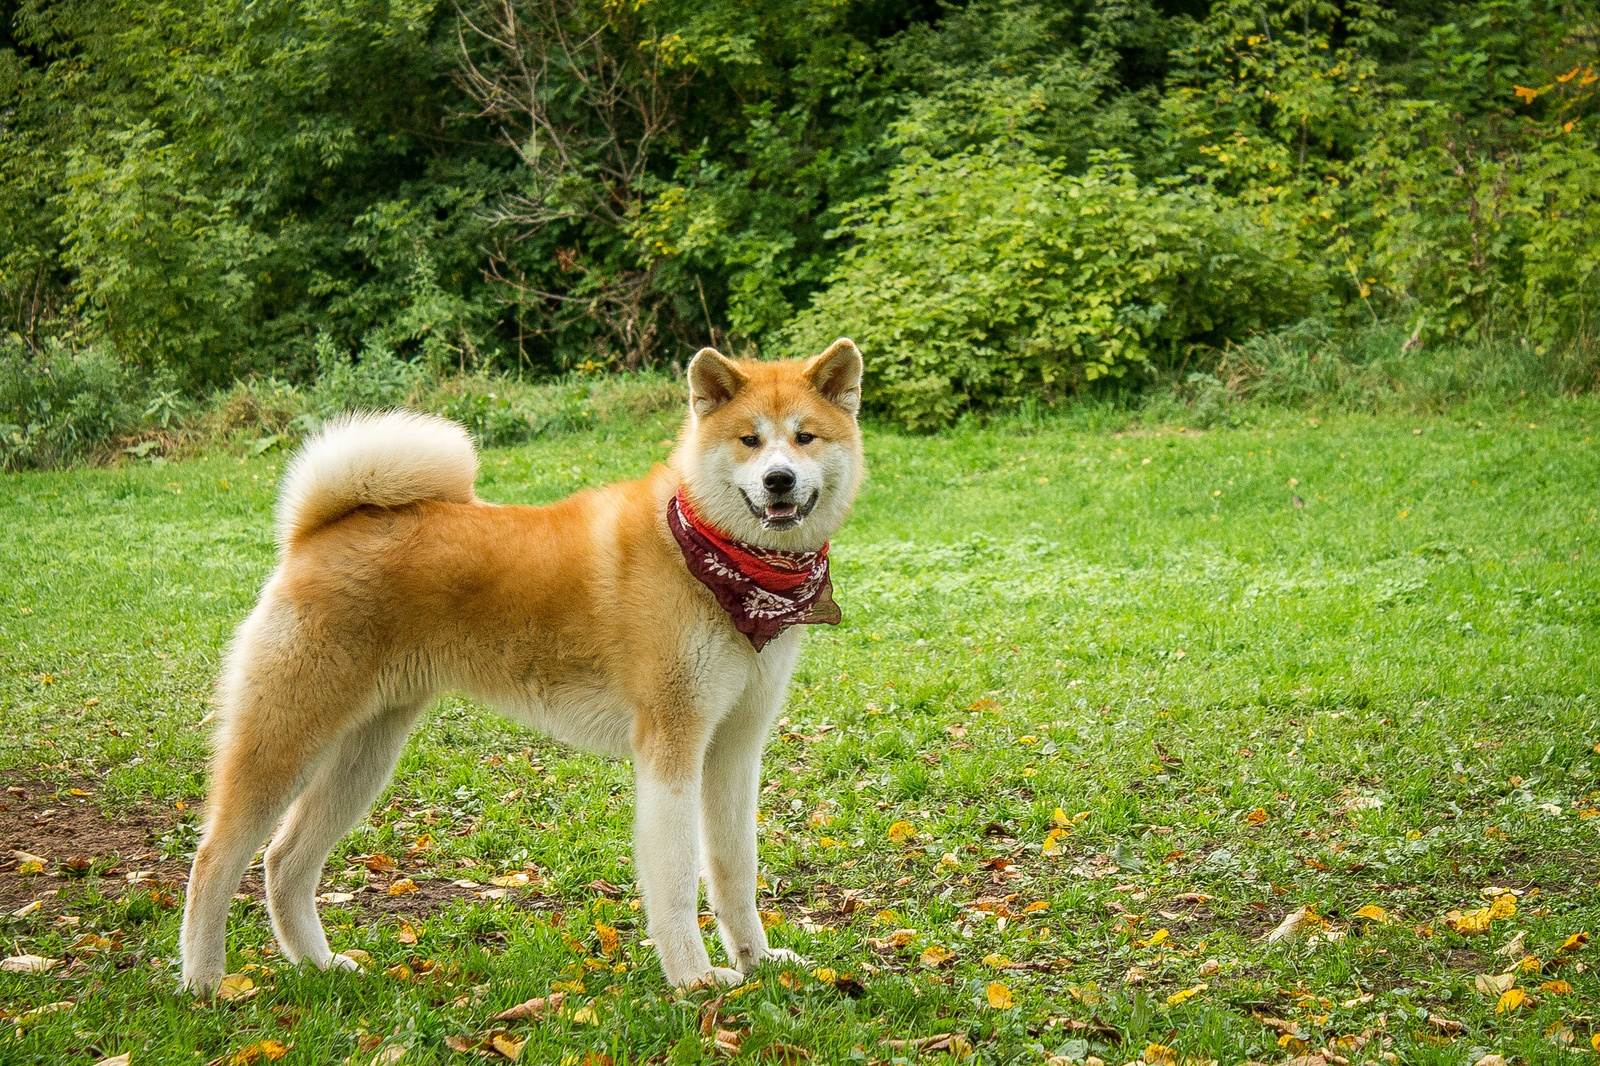 Акита-ину (японская акита) — порода собаки